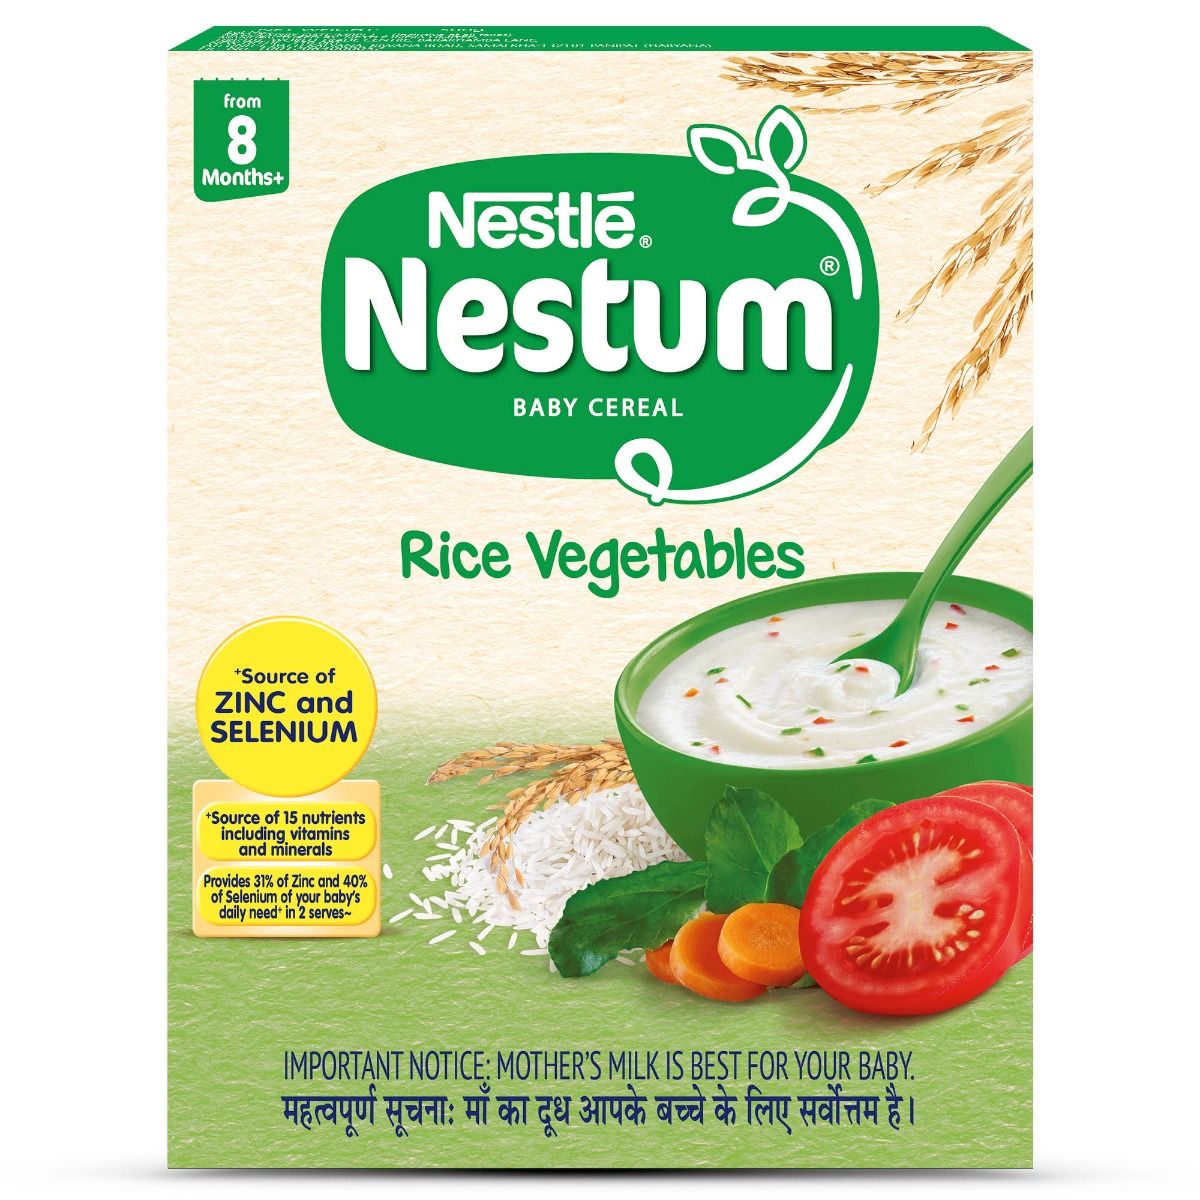 Buy Nestle Nestum Baby Cereal Rice Vegetable, 8M+, 300 gm Refill Pack Online